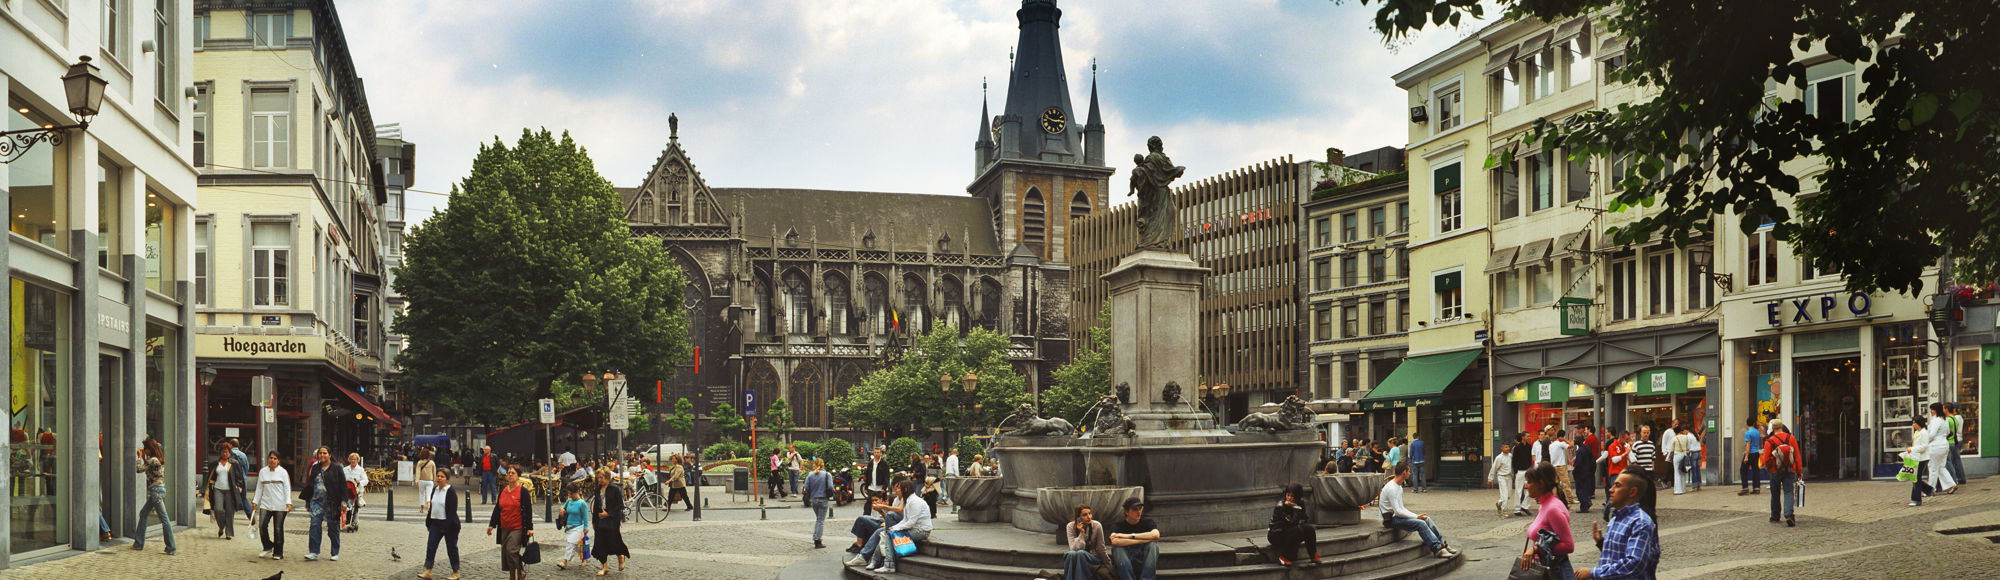 Het centrale plein in Luik gelegen voor de kerk